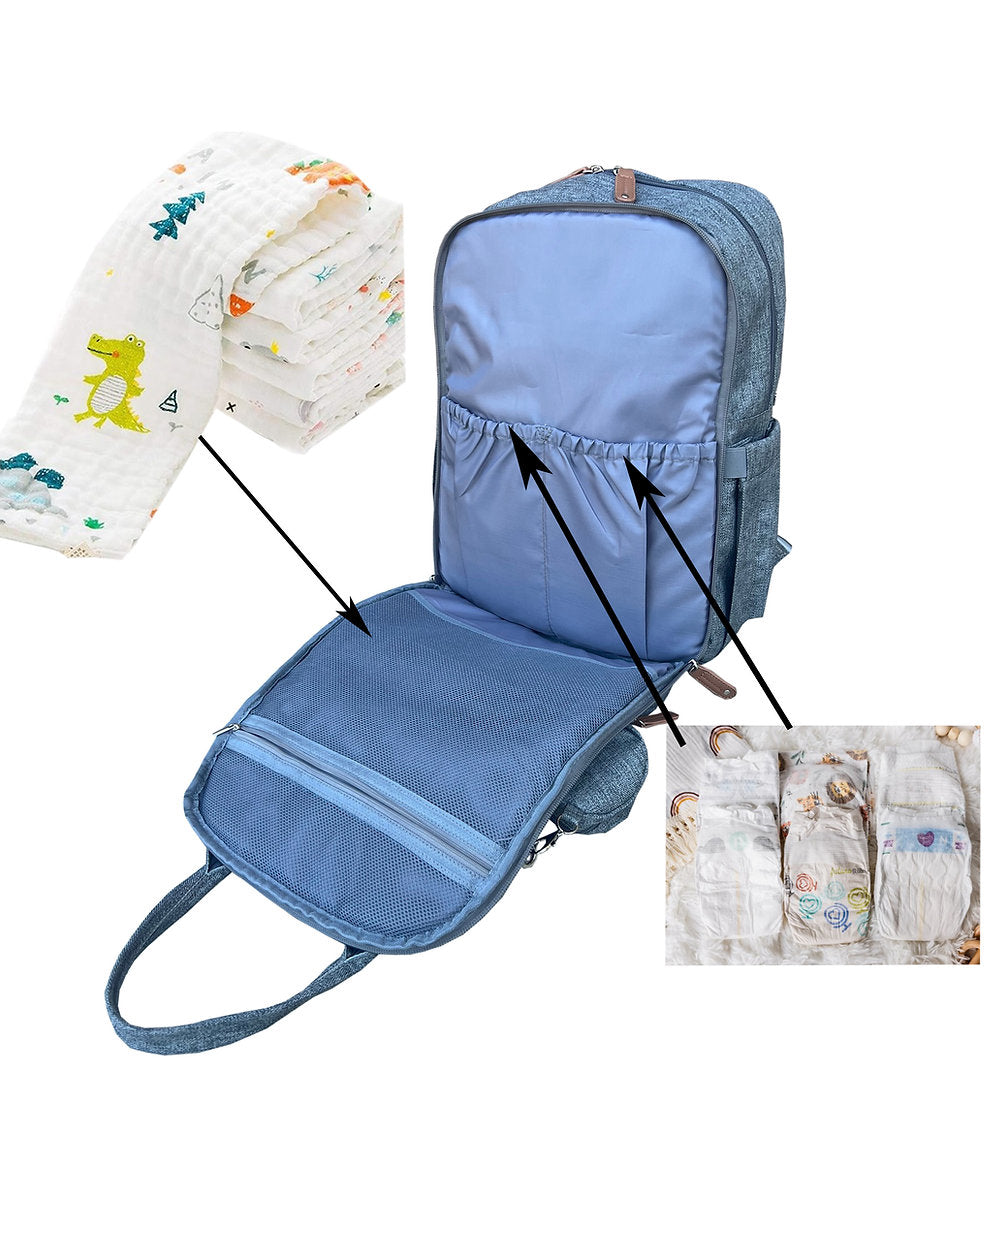 Unisex Concealed Carry Backpack Diaper Bag - Hiding Hilda, LLC